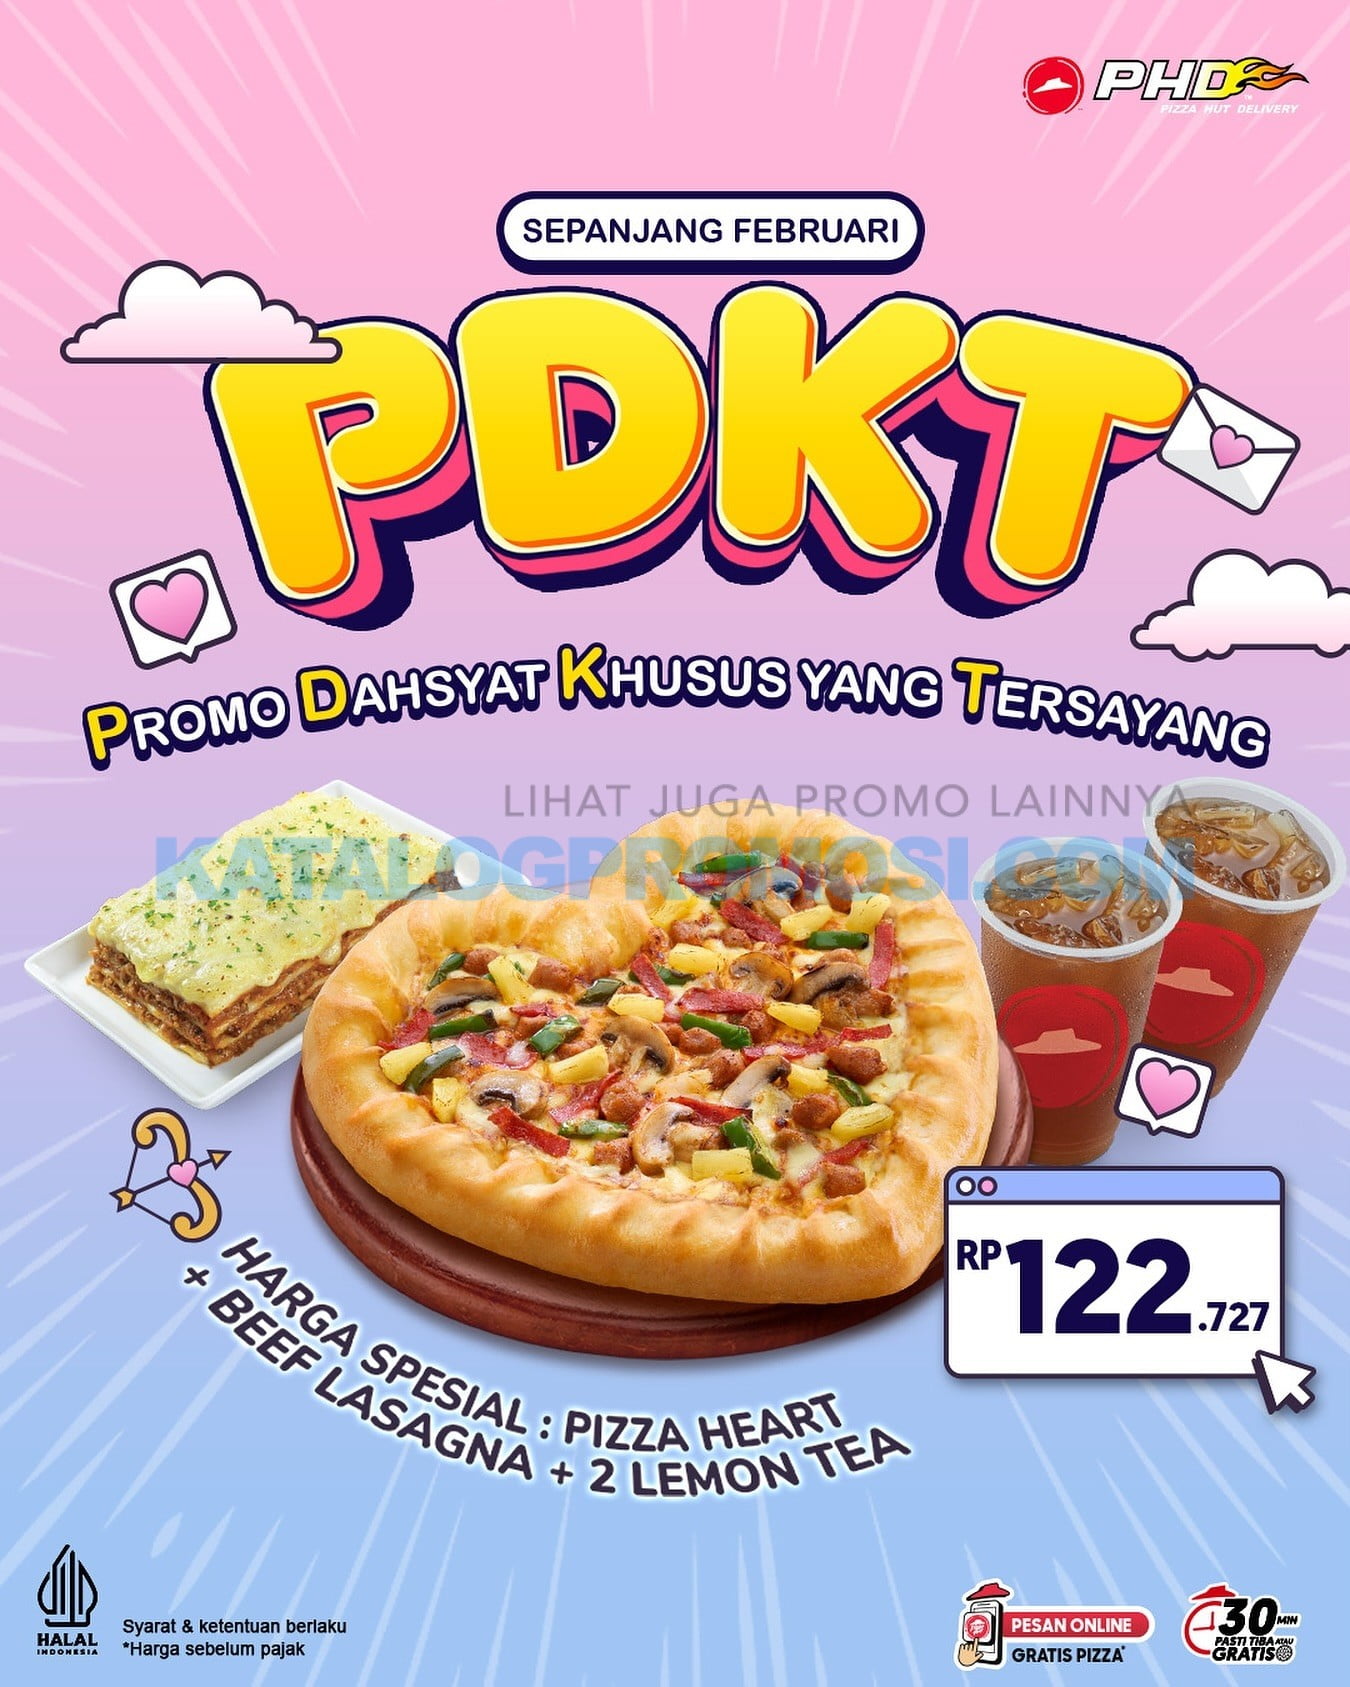 Promo PHD PDKT - Paket Pizza Heart + Beef Lasagna dan Lemon Tea cuma Rp. 122.727